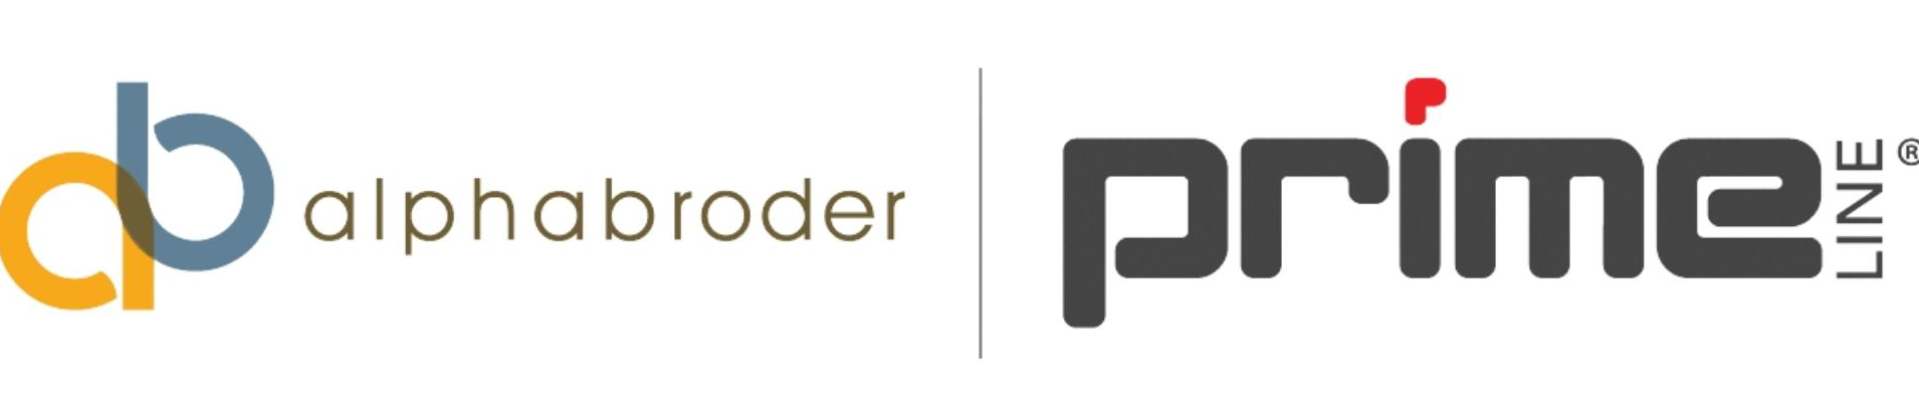 alpha-broder-logo.png